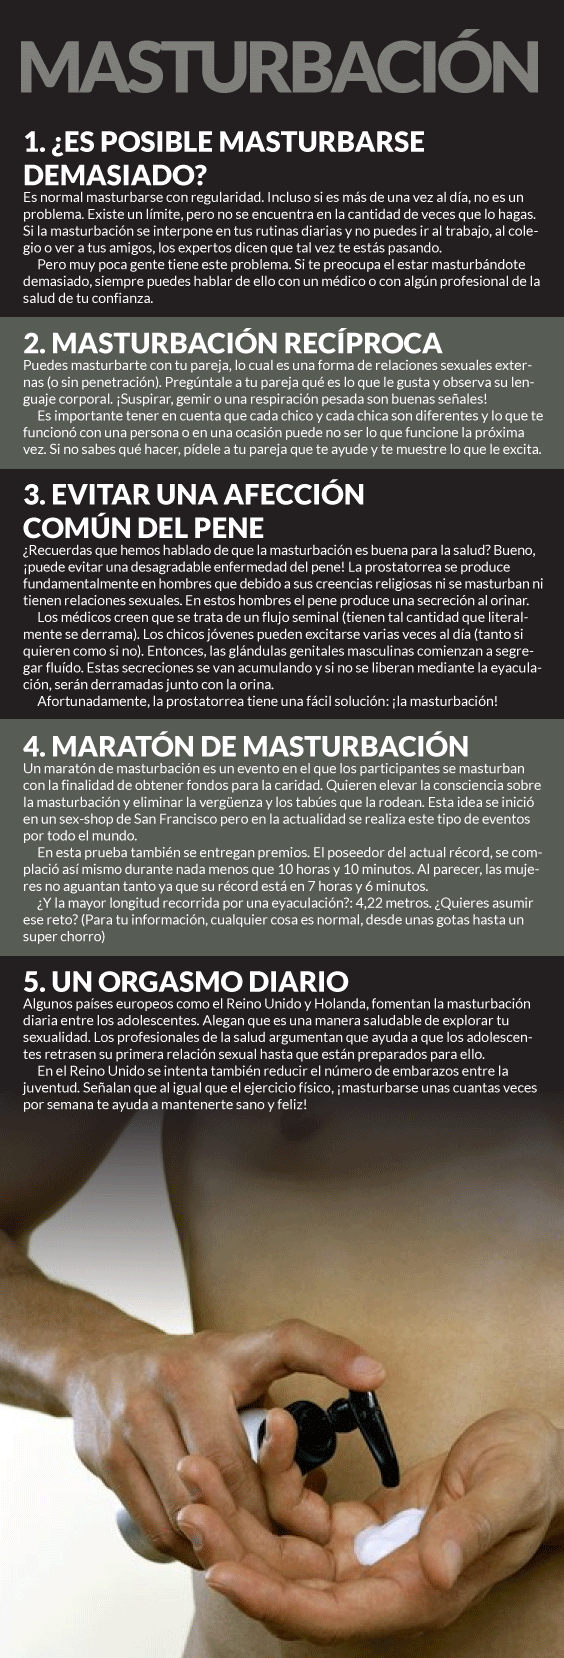 Cinco Datos Sobre La MasturbaciÓn Sinembargo Mx 5865